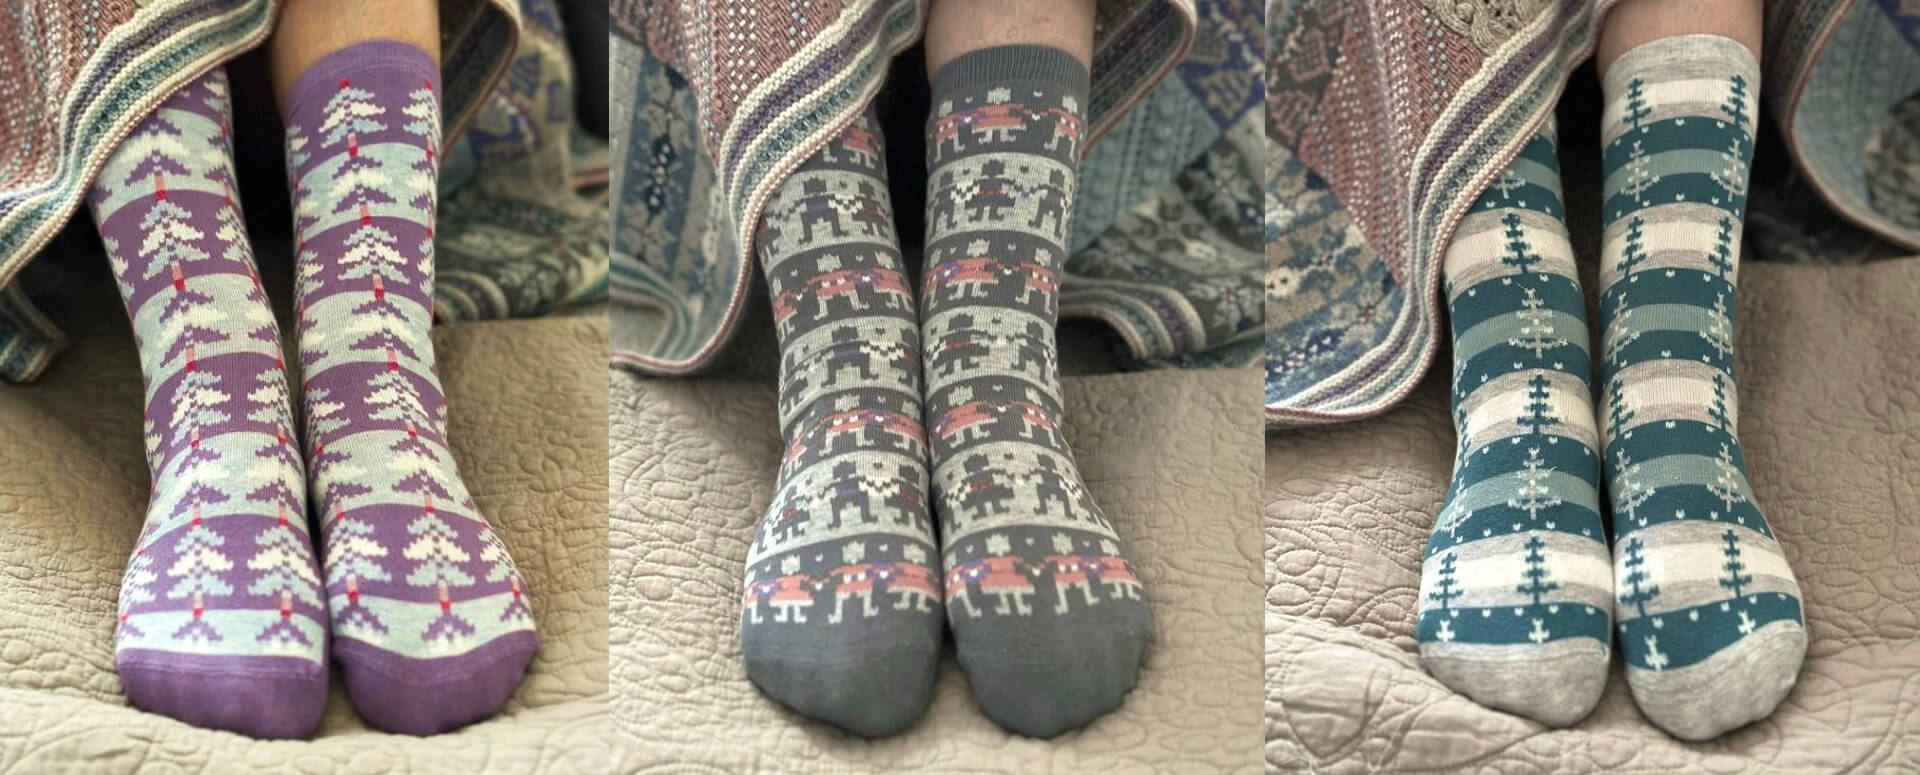 Ready-to-wear festive socks